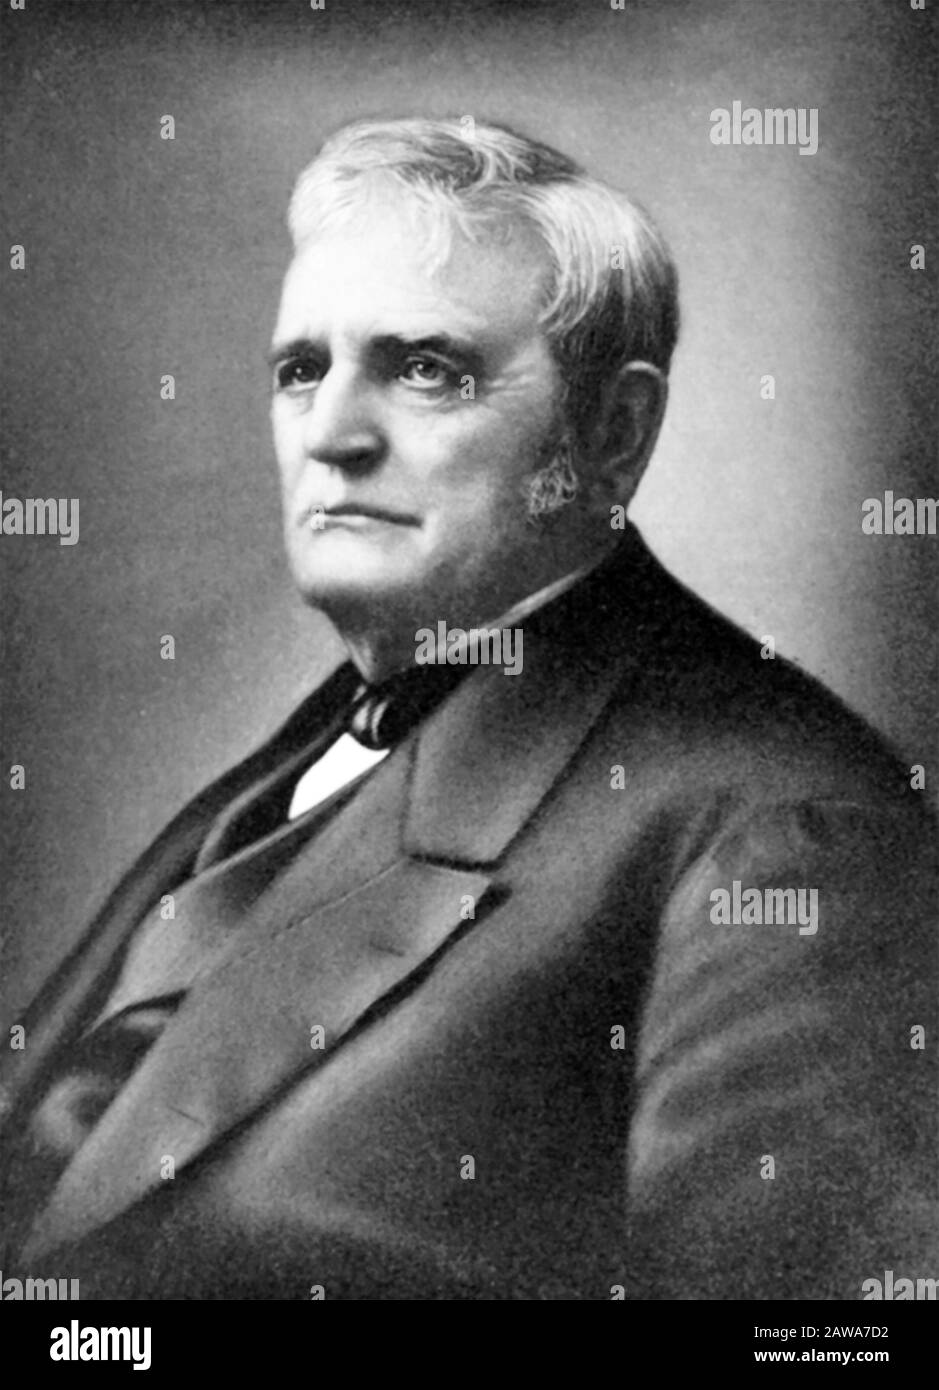 John DEERE (1804-1886) homme d'affaires américain qui a fondé l'un des plus grands fabricants d'équipements agricoles et de construction au monde Banque D'Images